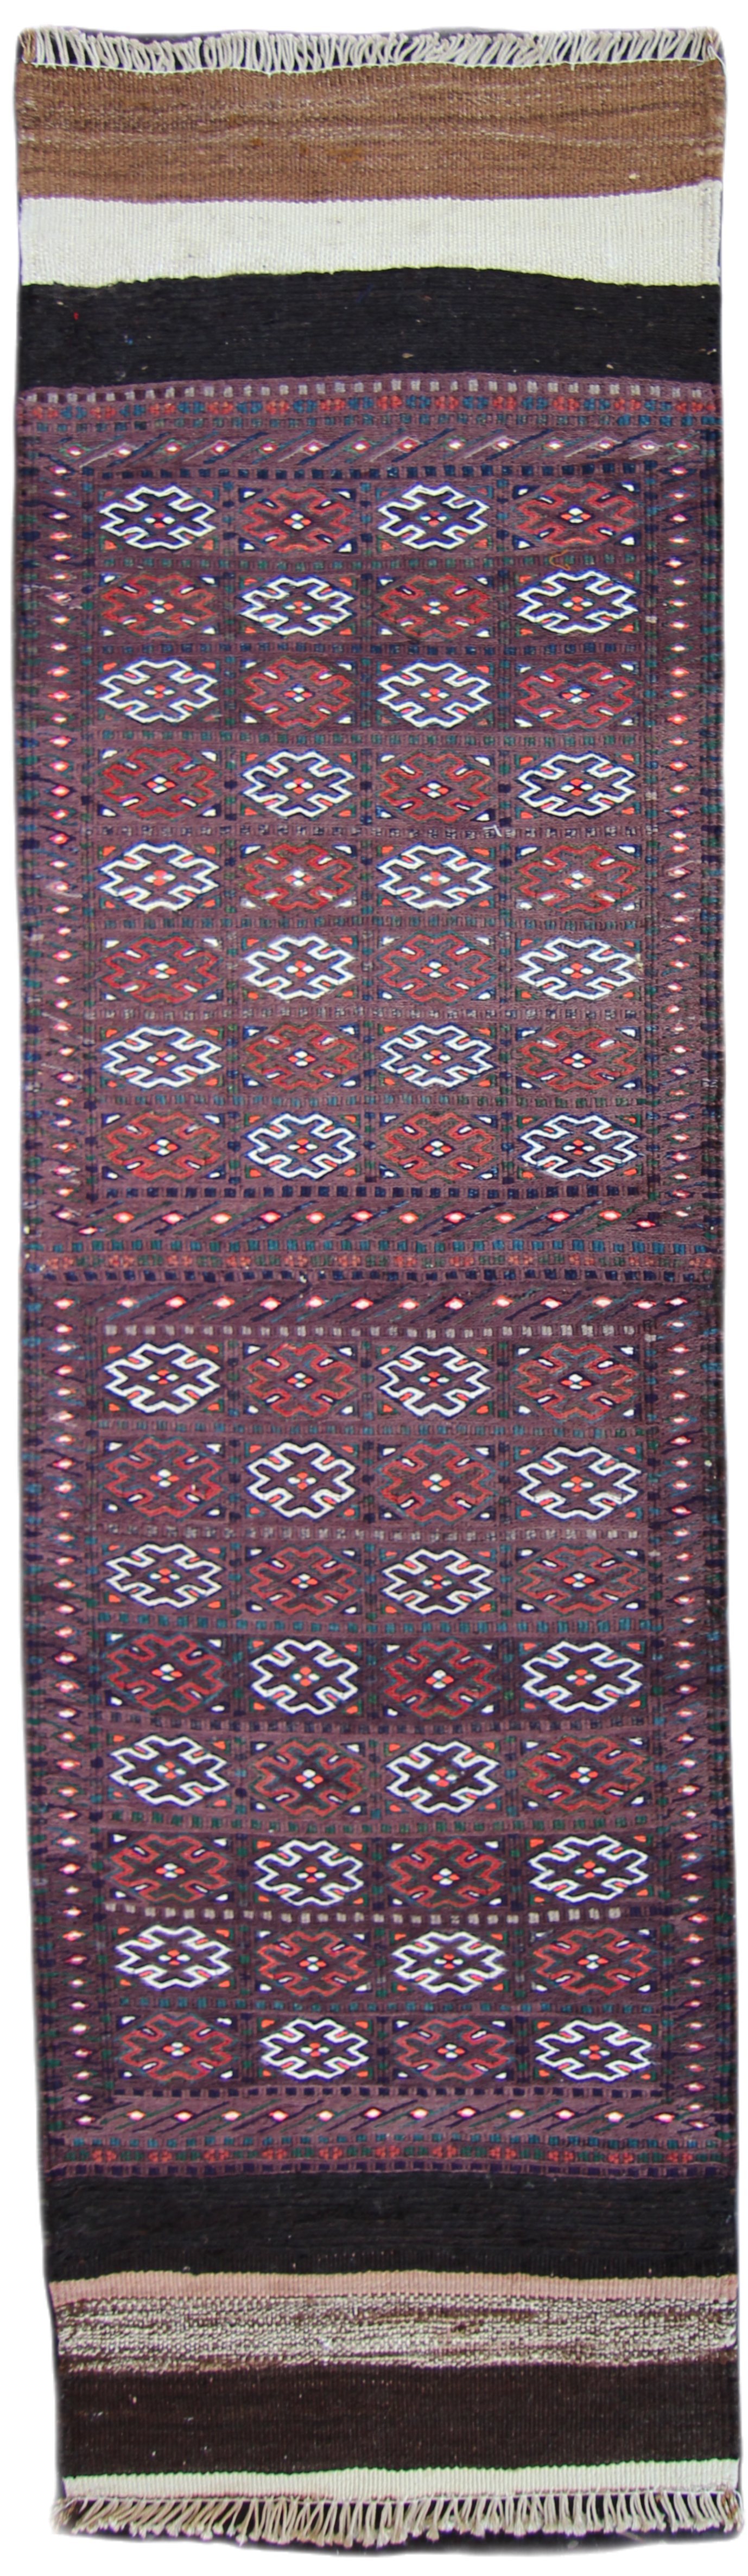 Persian Tribal Kilim Hallway Rug 6'6''x1'9'' Natural Wool Boho Rustic Runner Rug